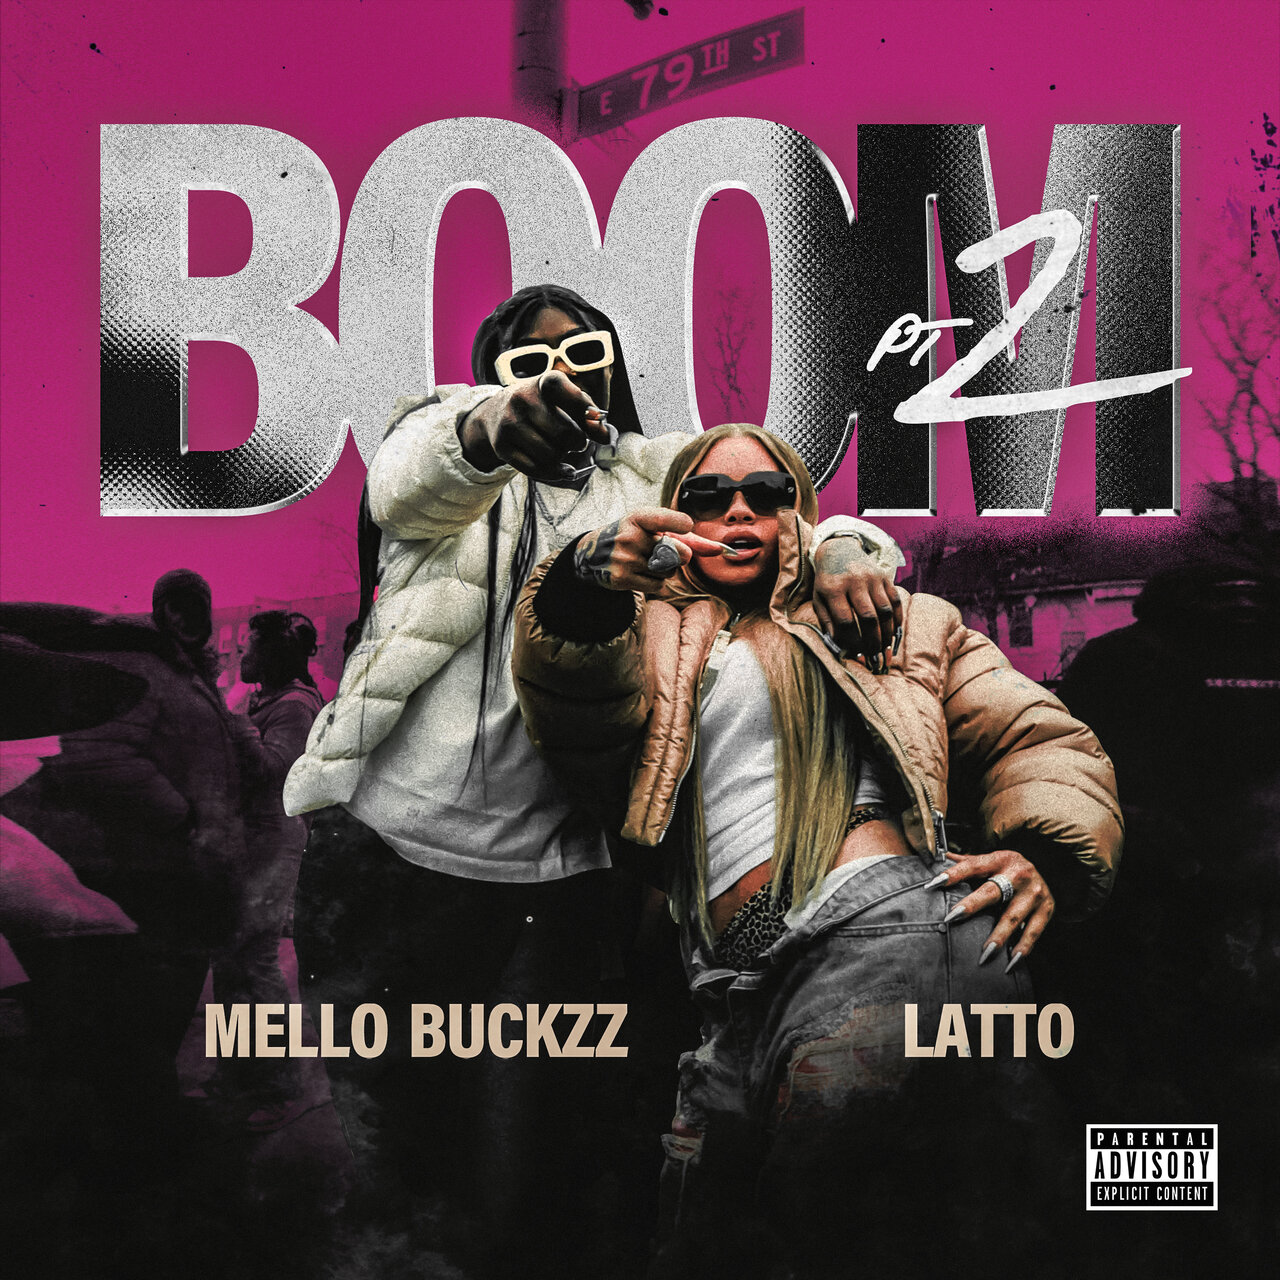 Mello Buckzz - Boom Pt. 2 (ft. Latto) (Cover)